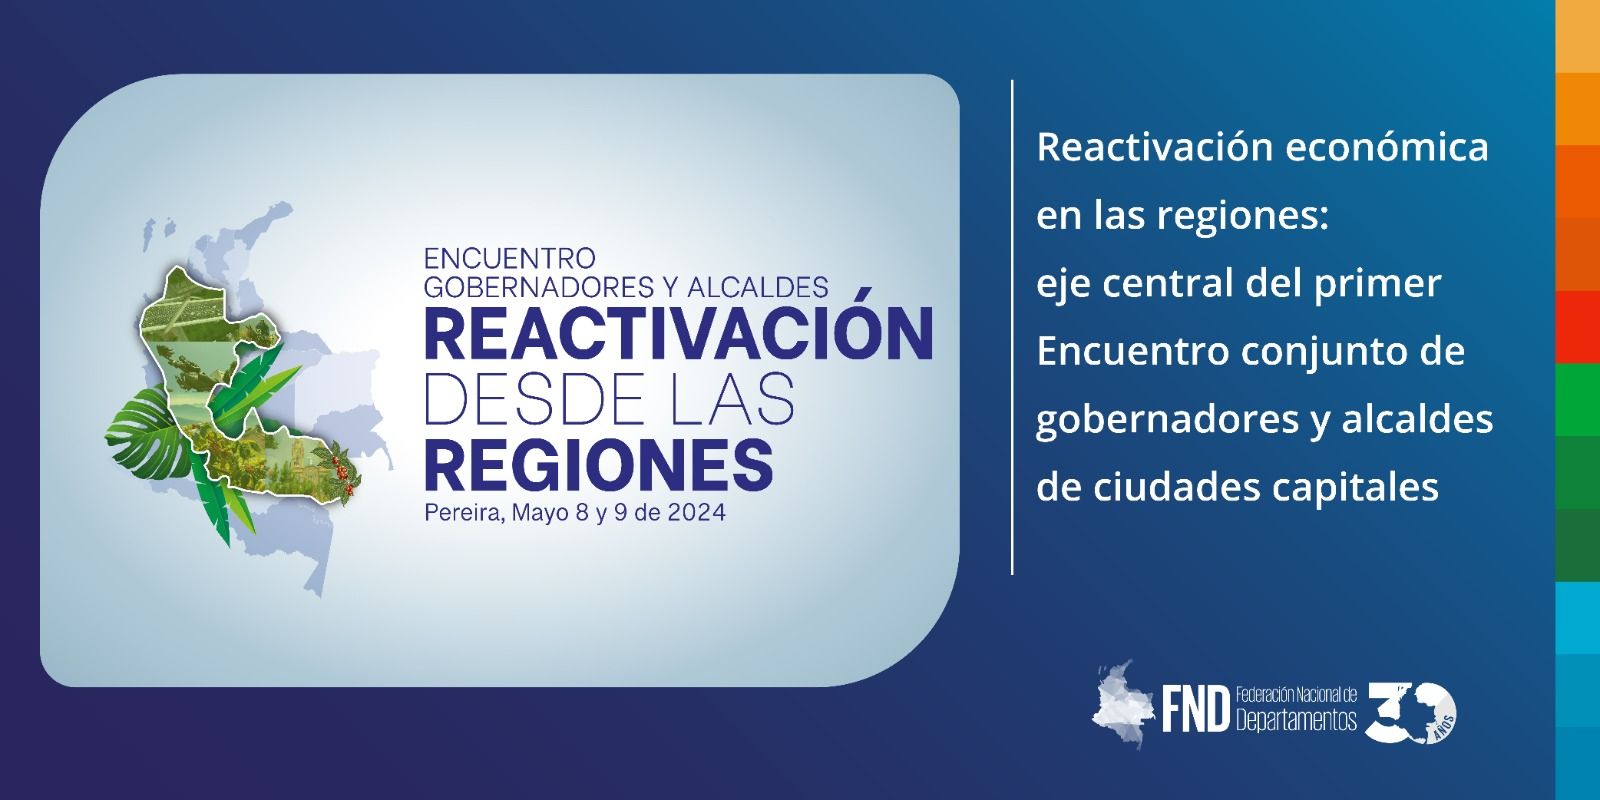 Reactivación económica en las regiones: eje central del primer Encuentro conjunto de gobernadores y alcaldes de ciudades capitales image